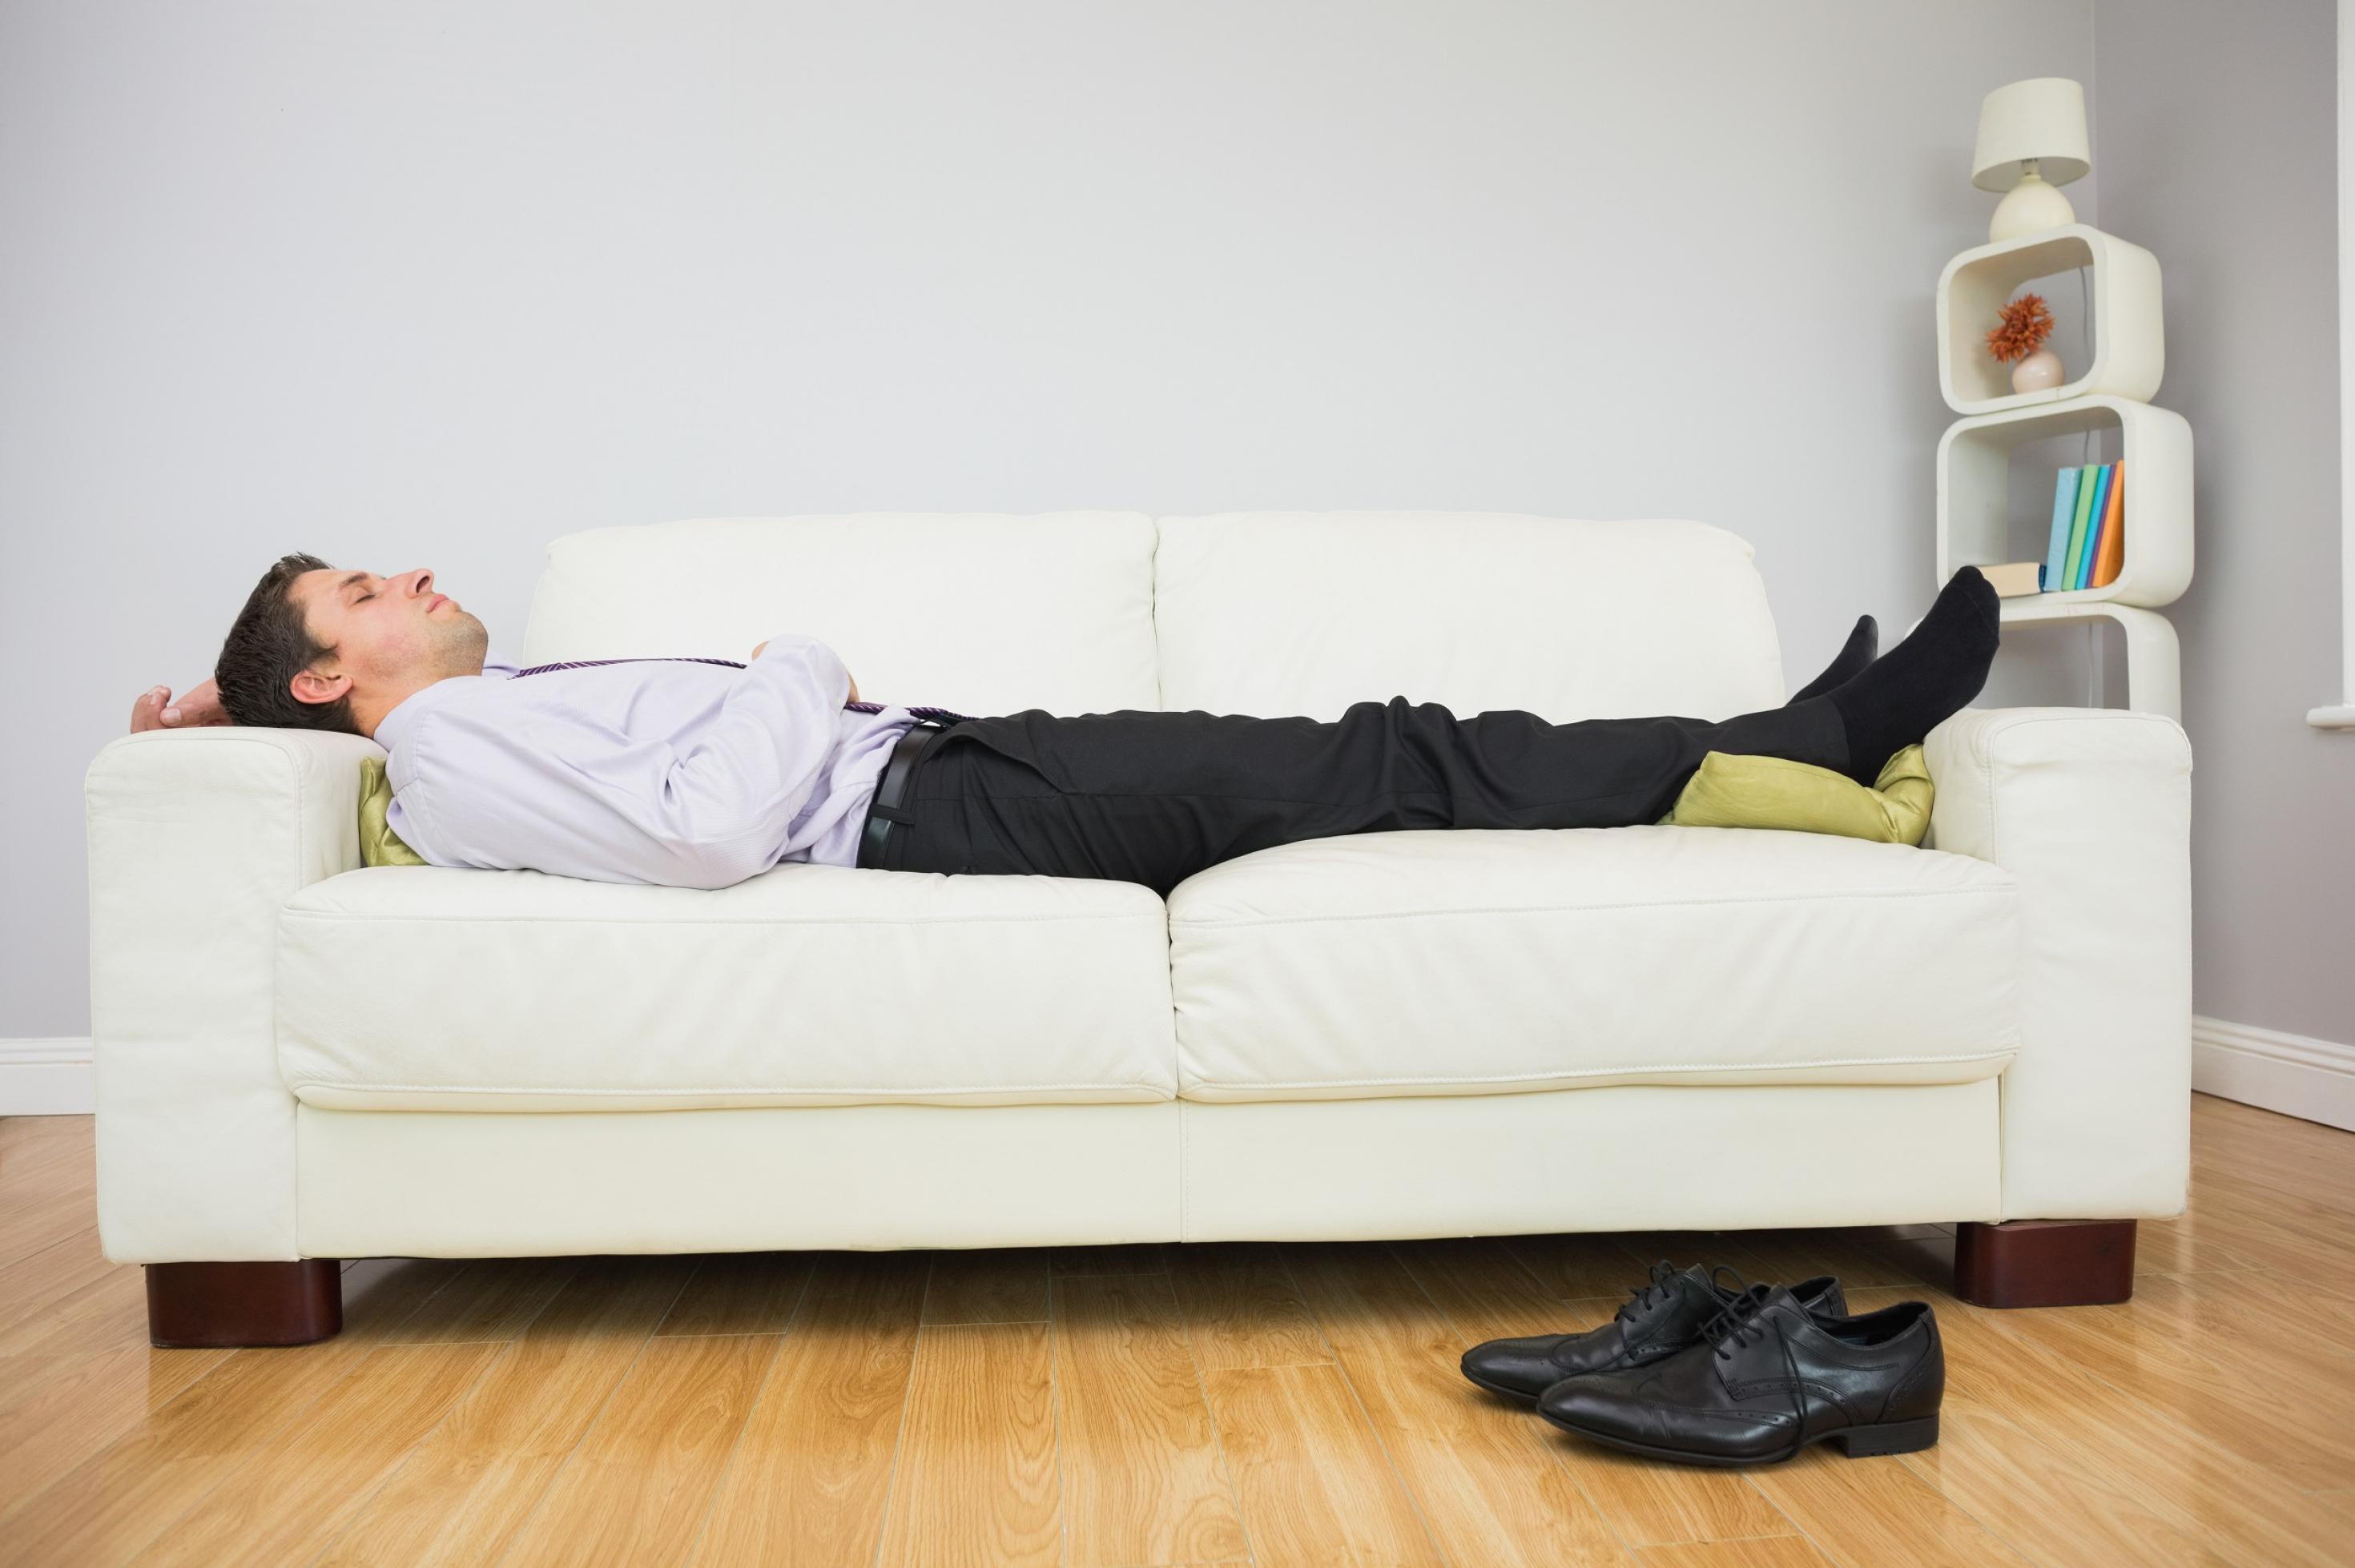 Ein Mann liegt ausgestreckt auf einem Sofa und schläft. Er hat noch Anzughose, Schlips und Hemd an, seine schwarzen Schuhe liegen auf dem Boden.